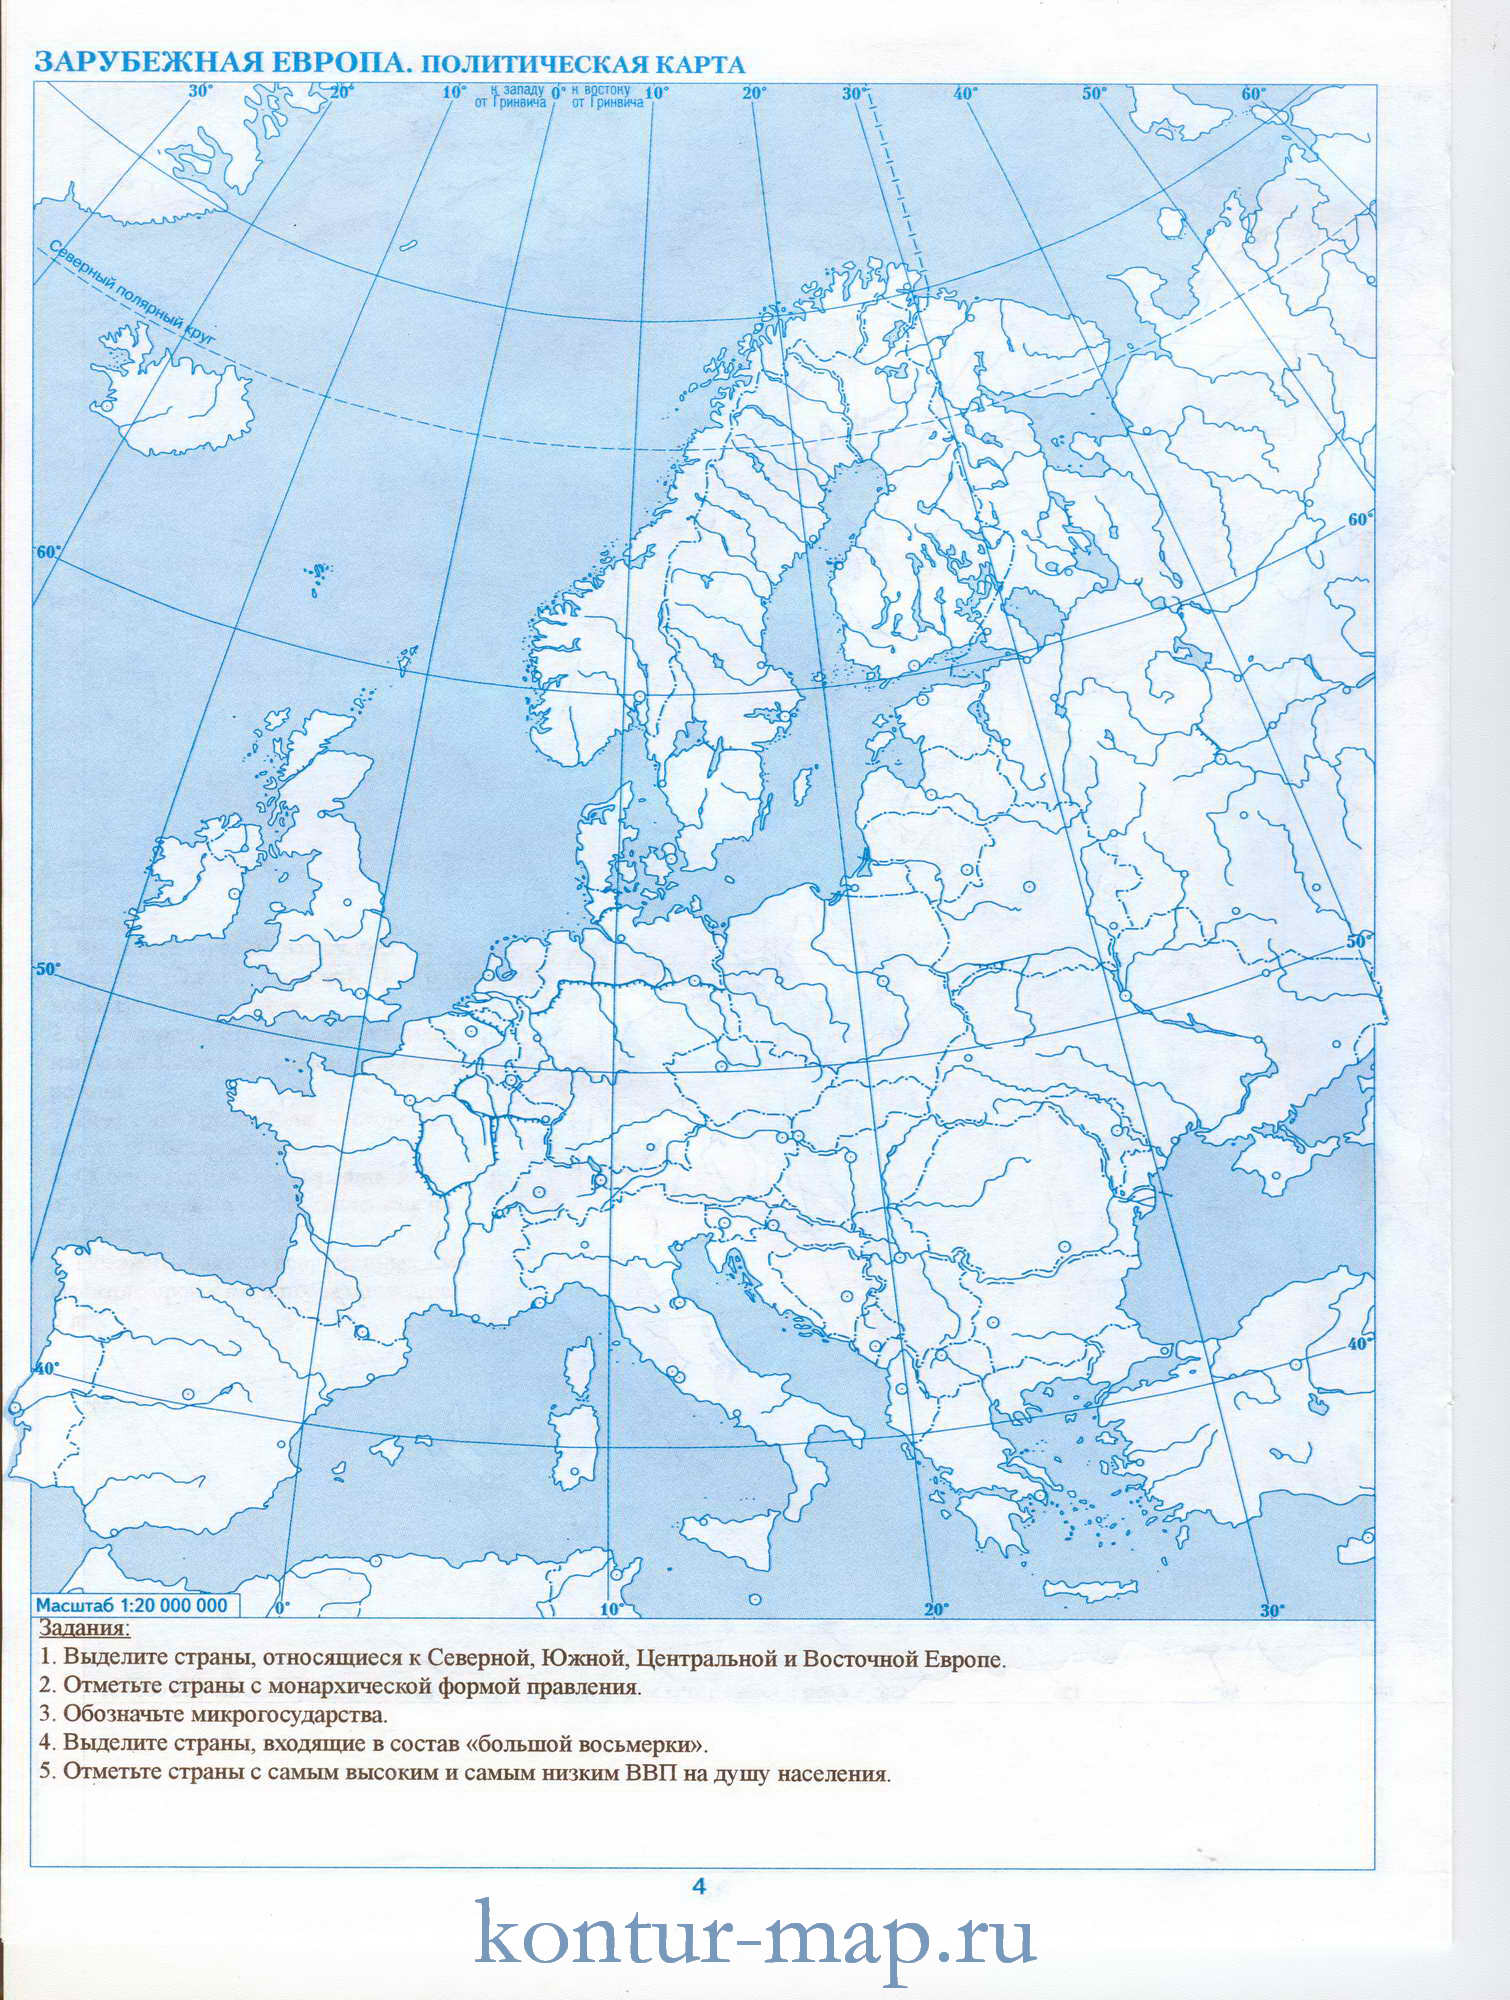 Зарубежная европа контурная карта